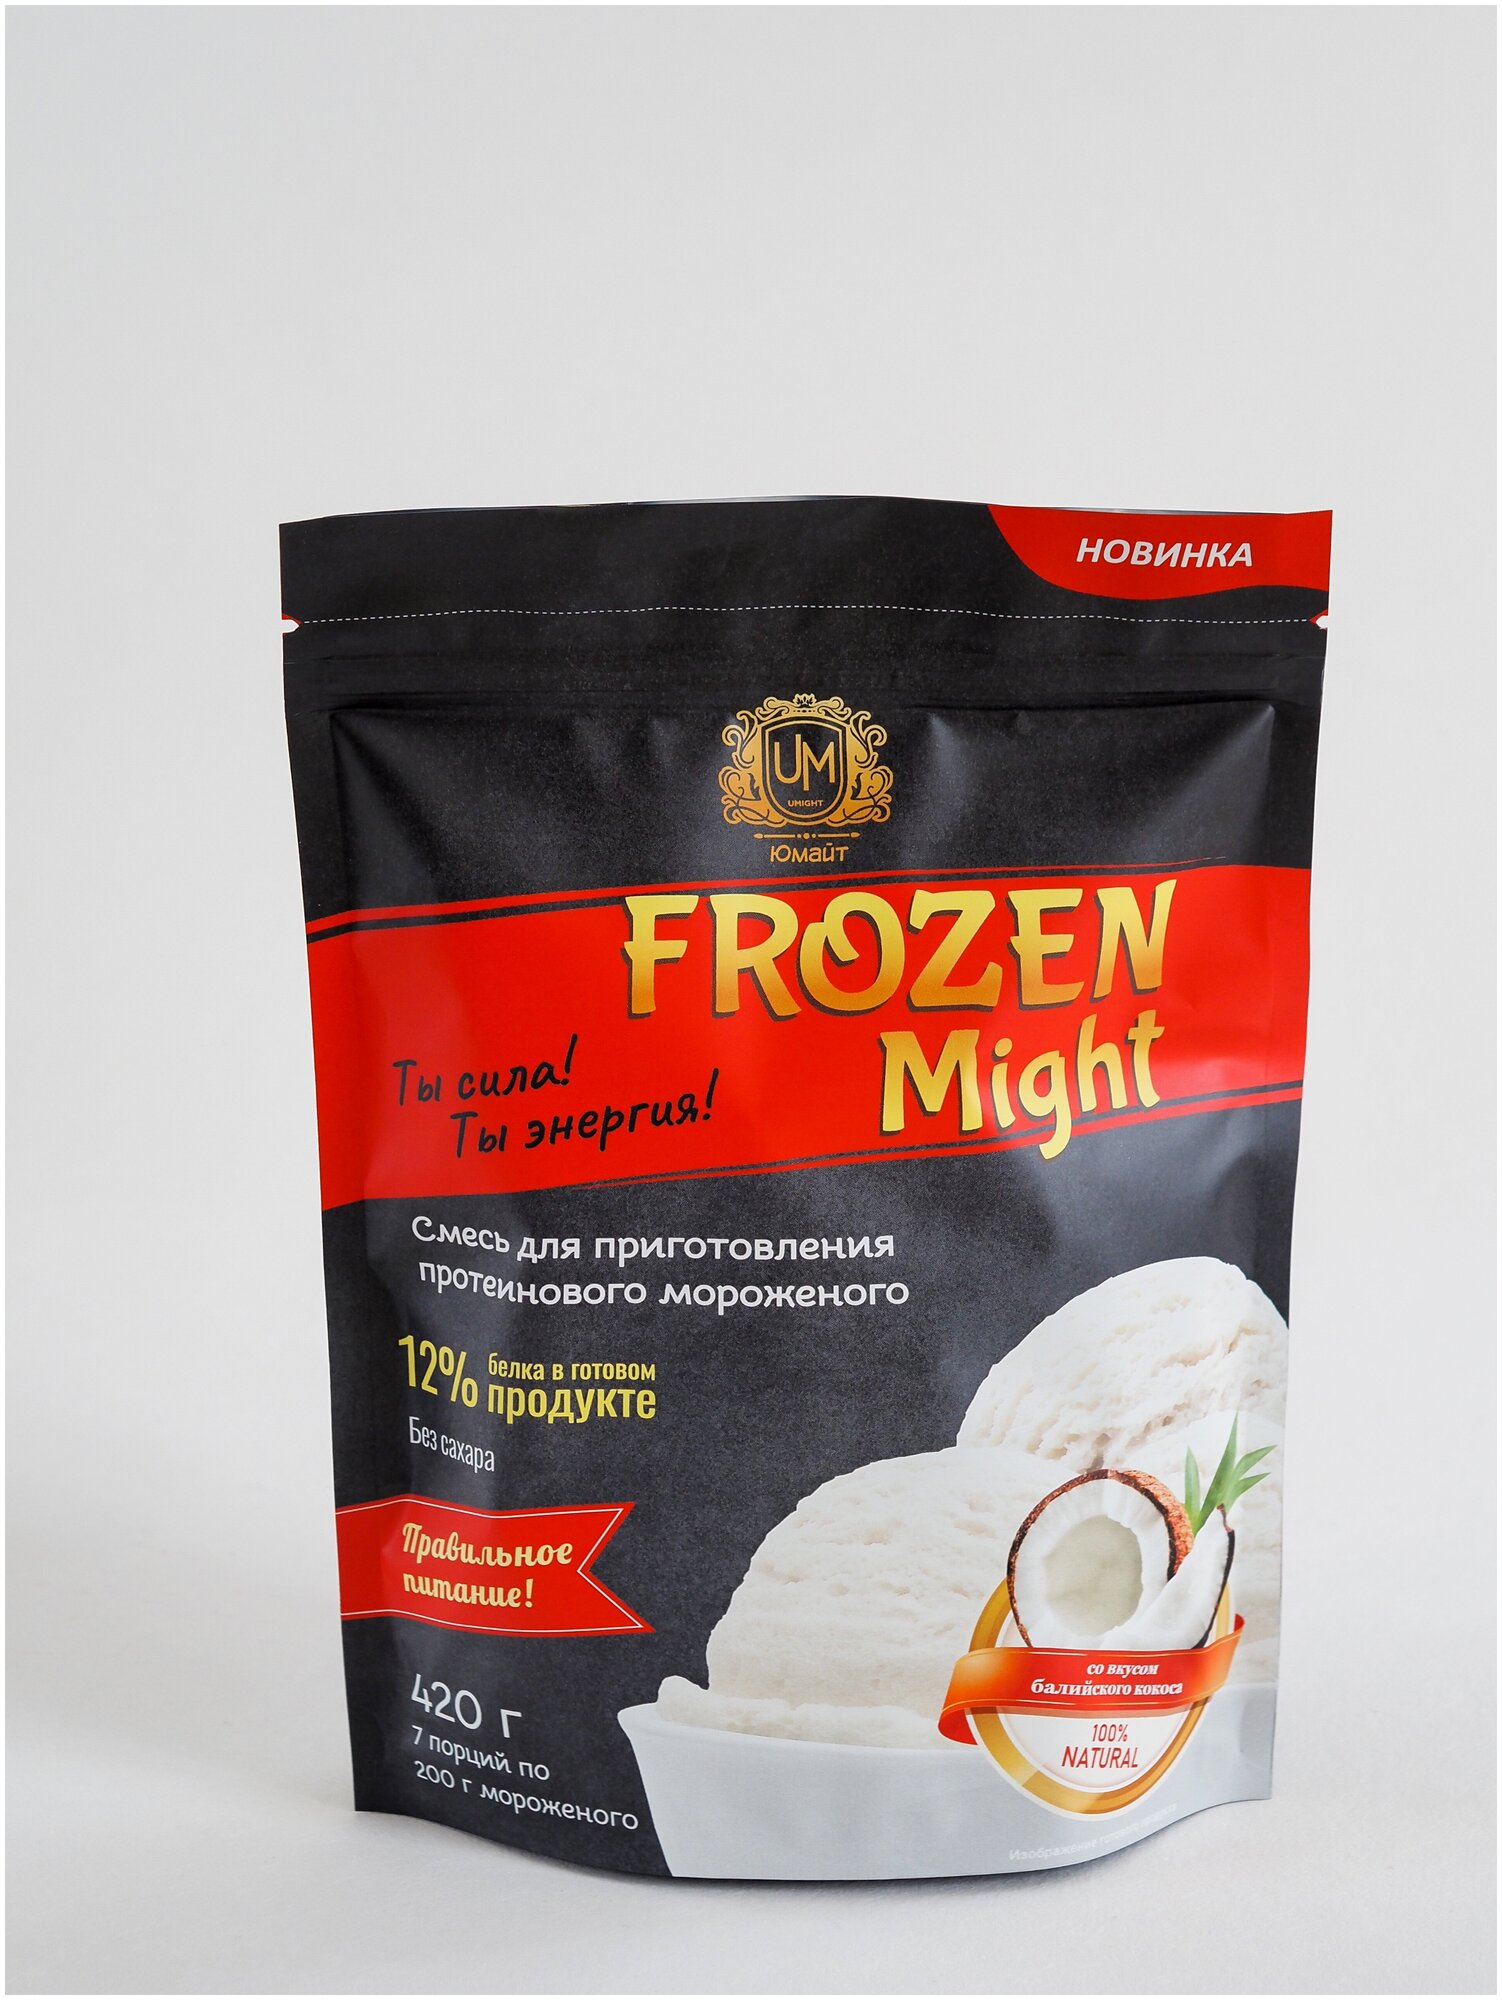 Протеиновое мороженое "Frozen Might" со вкусом балийского кокоса (сухая смесь), 420 г